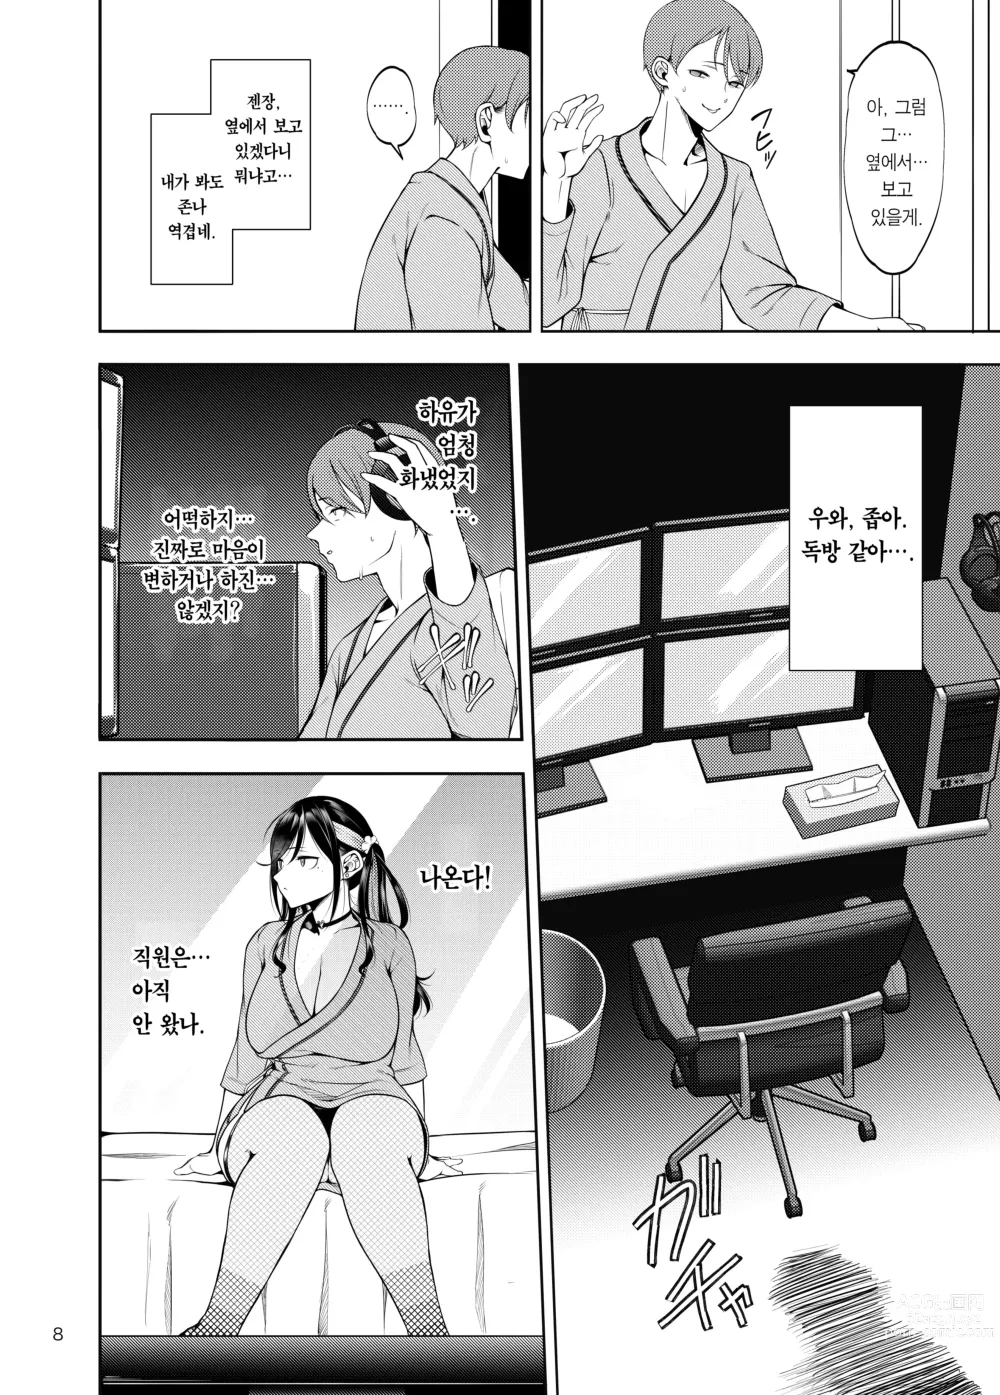 Page 9 of doujinshi 여친을 네토라세 풍속 같은 곳에 데려가는 게 아니었는데 (decensored)